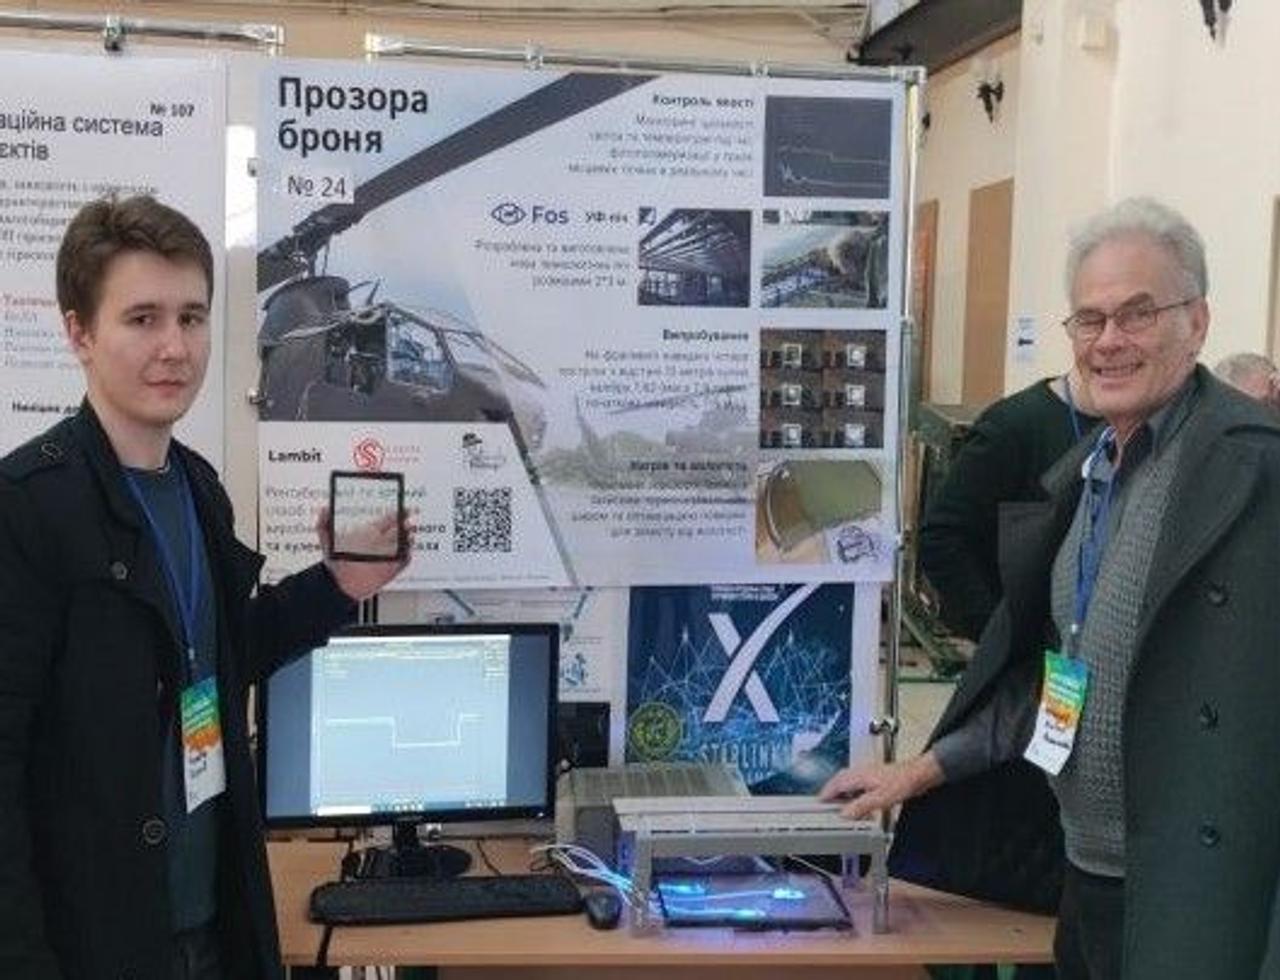 Украинские ученые создали уникальную технологию производства «прозрачной брони»0